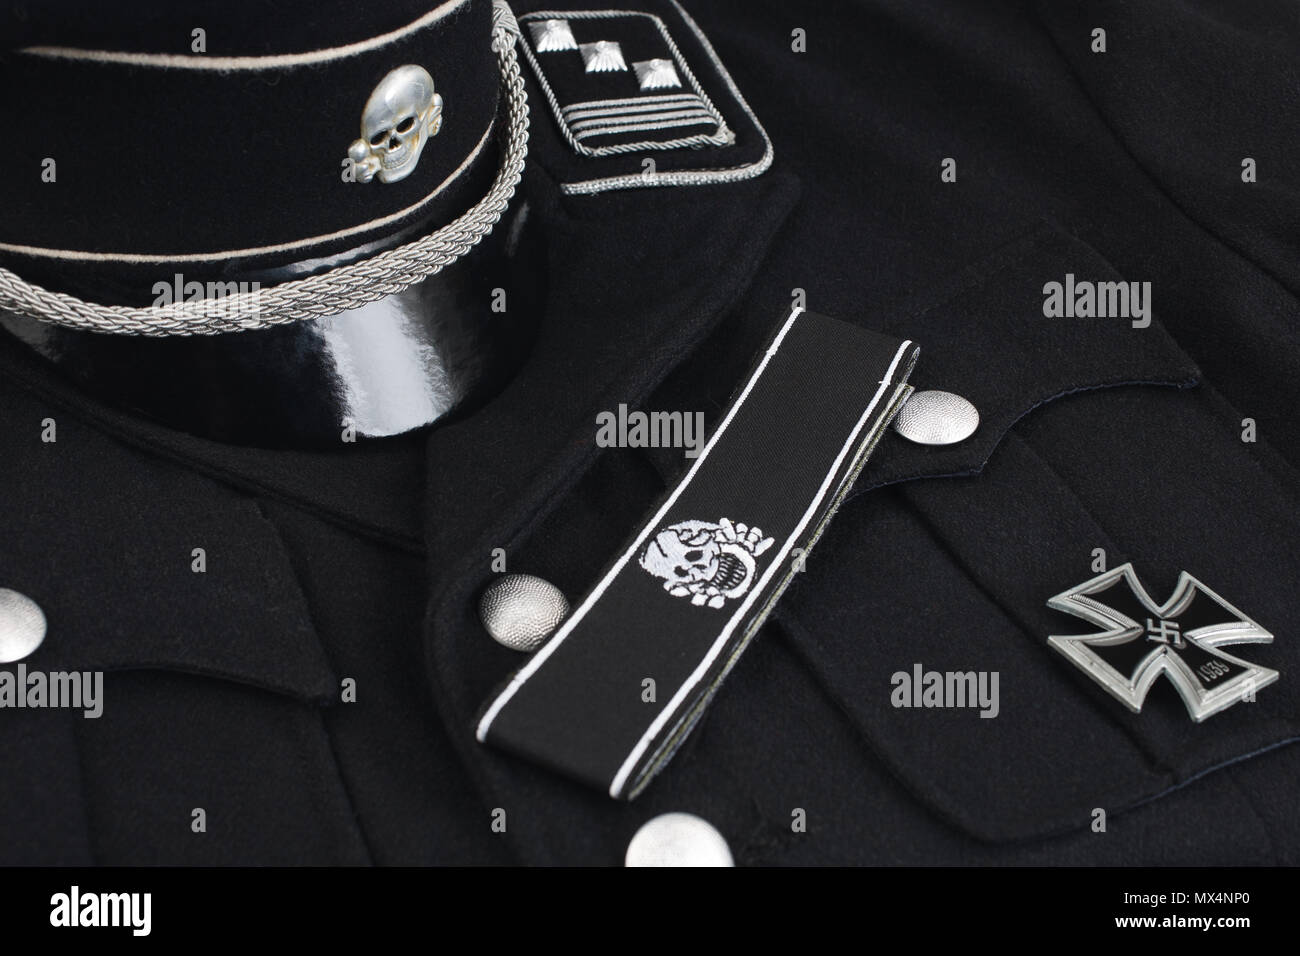 WW2 German nazi SS military black uniform and insignia background Stock  Photo - Alamy